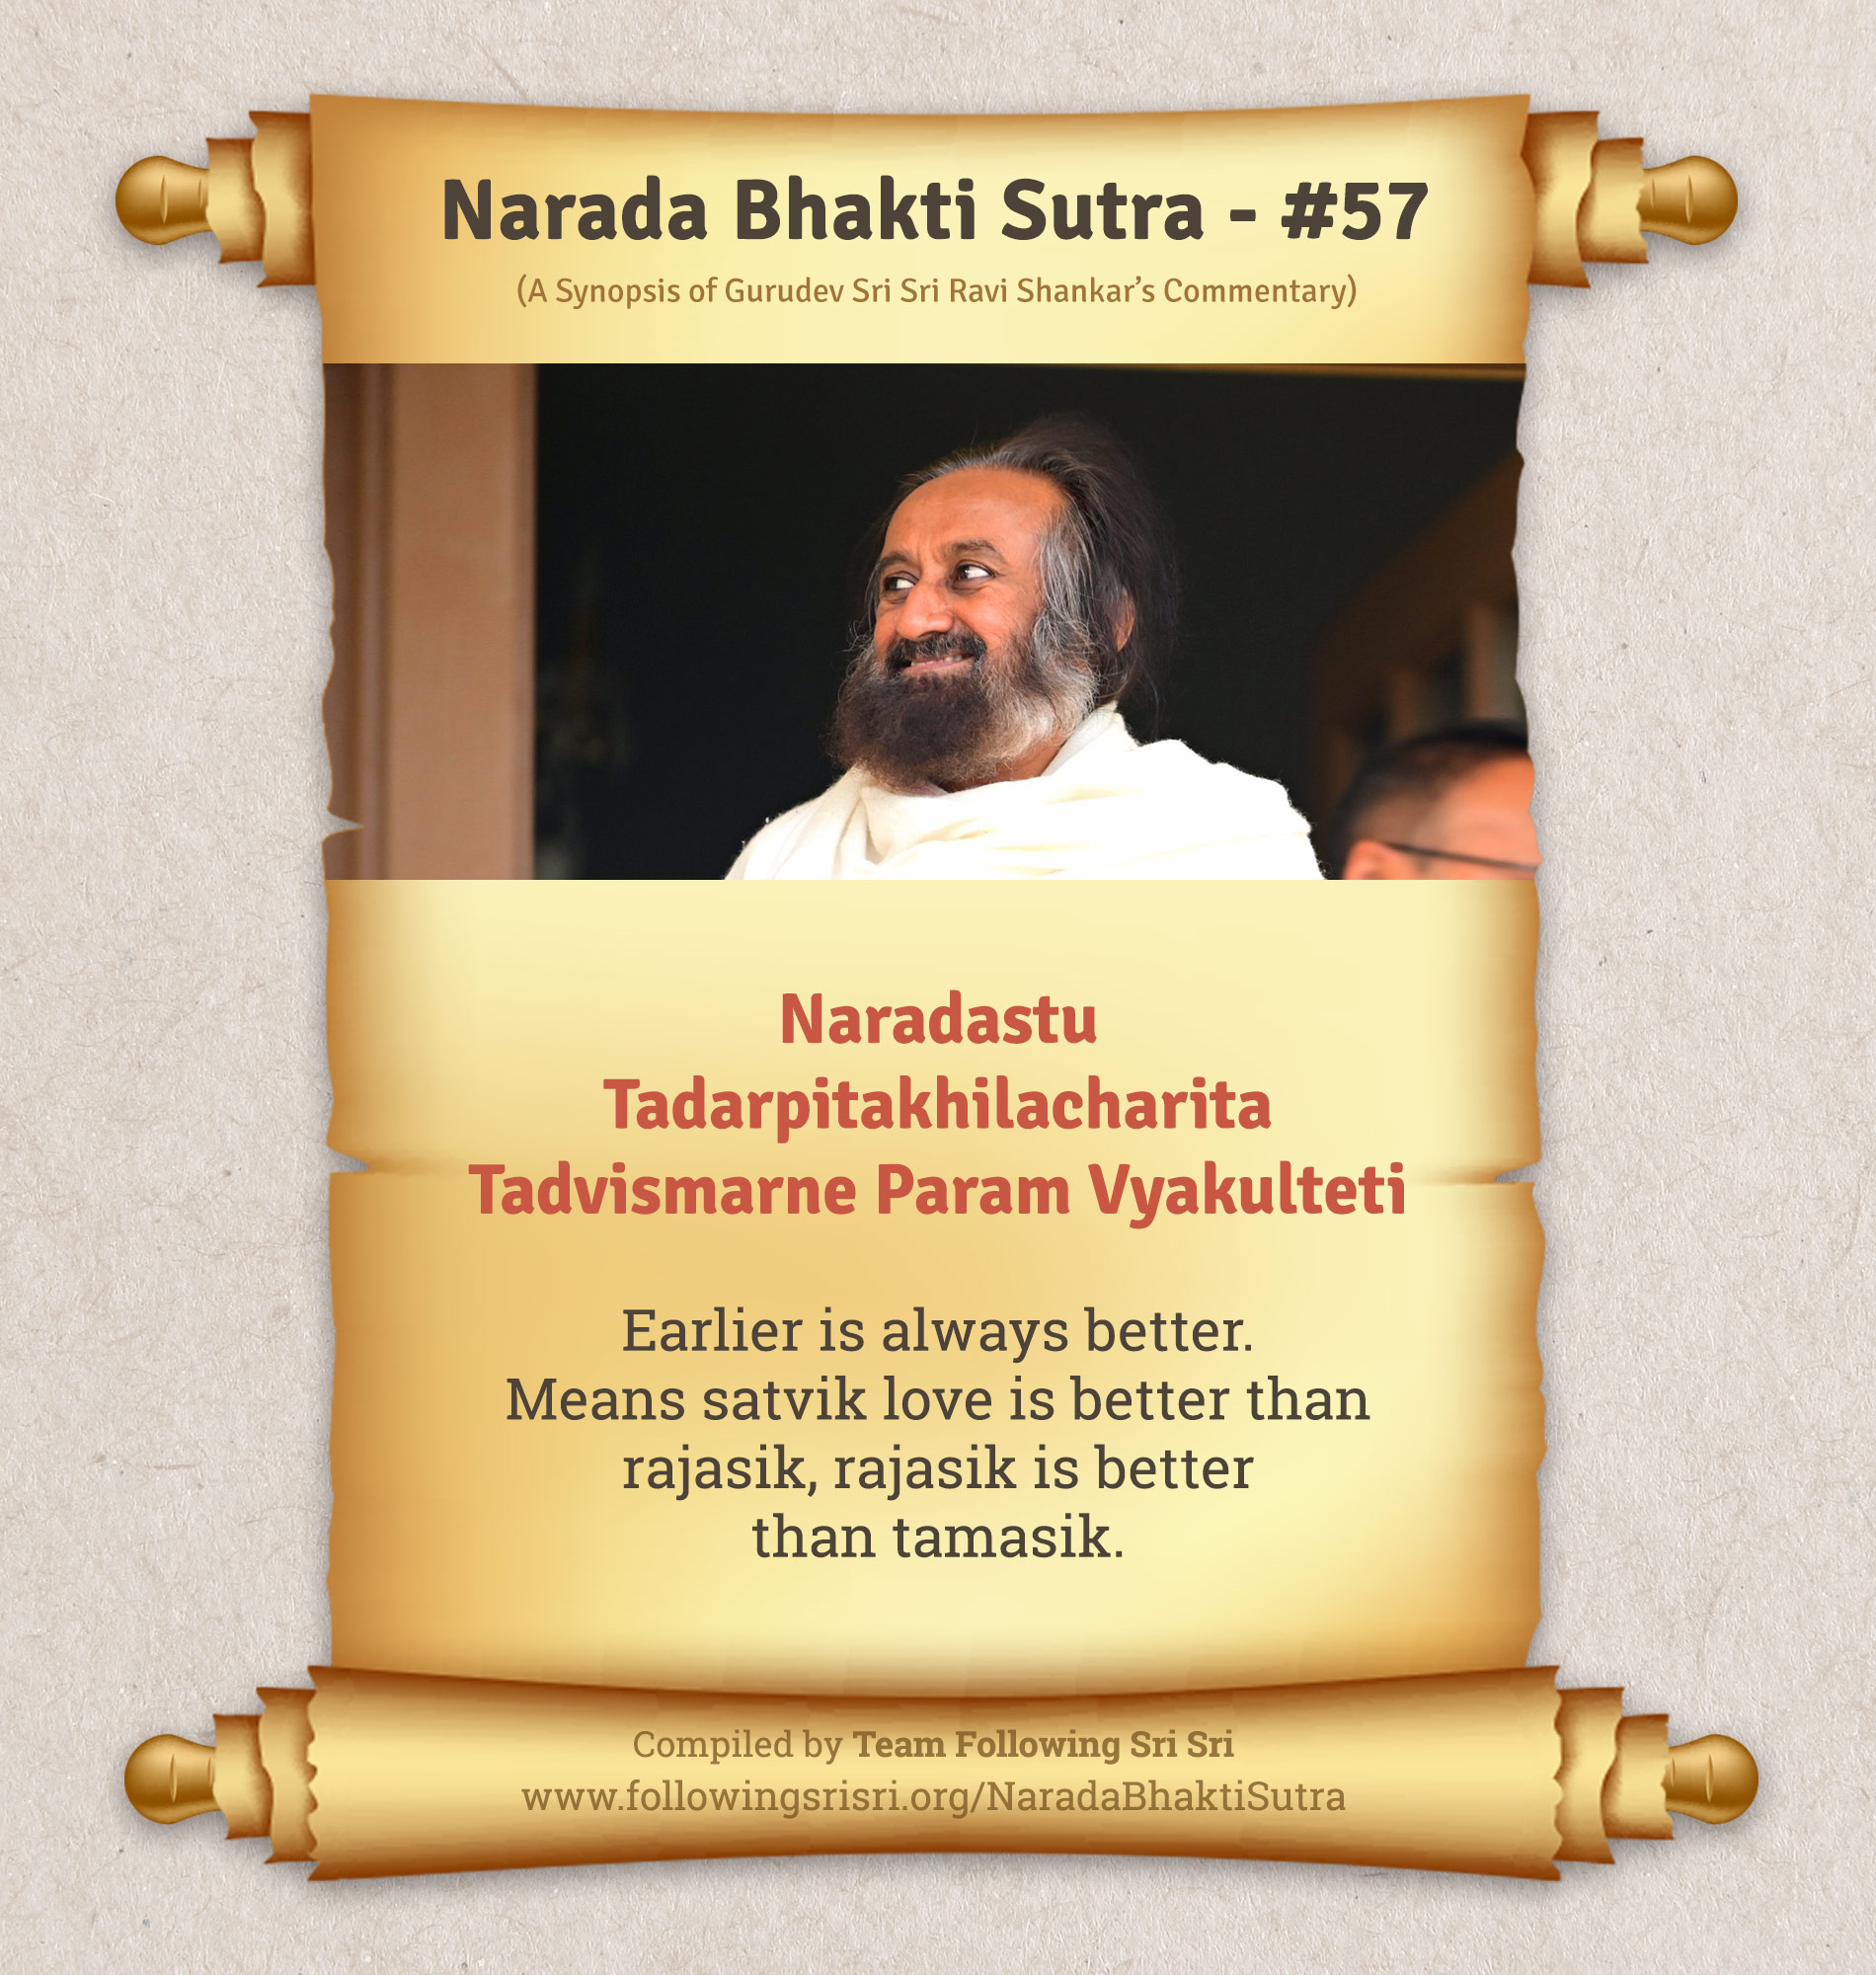 Narada Bhakti Sutras - Sutra 57